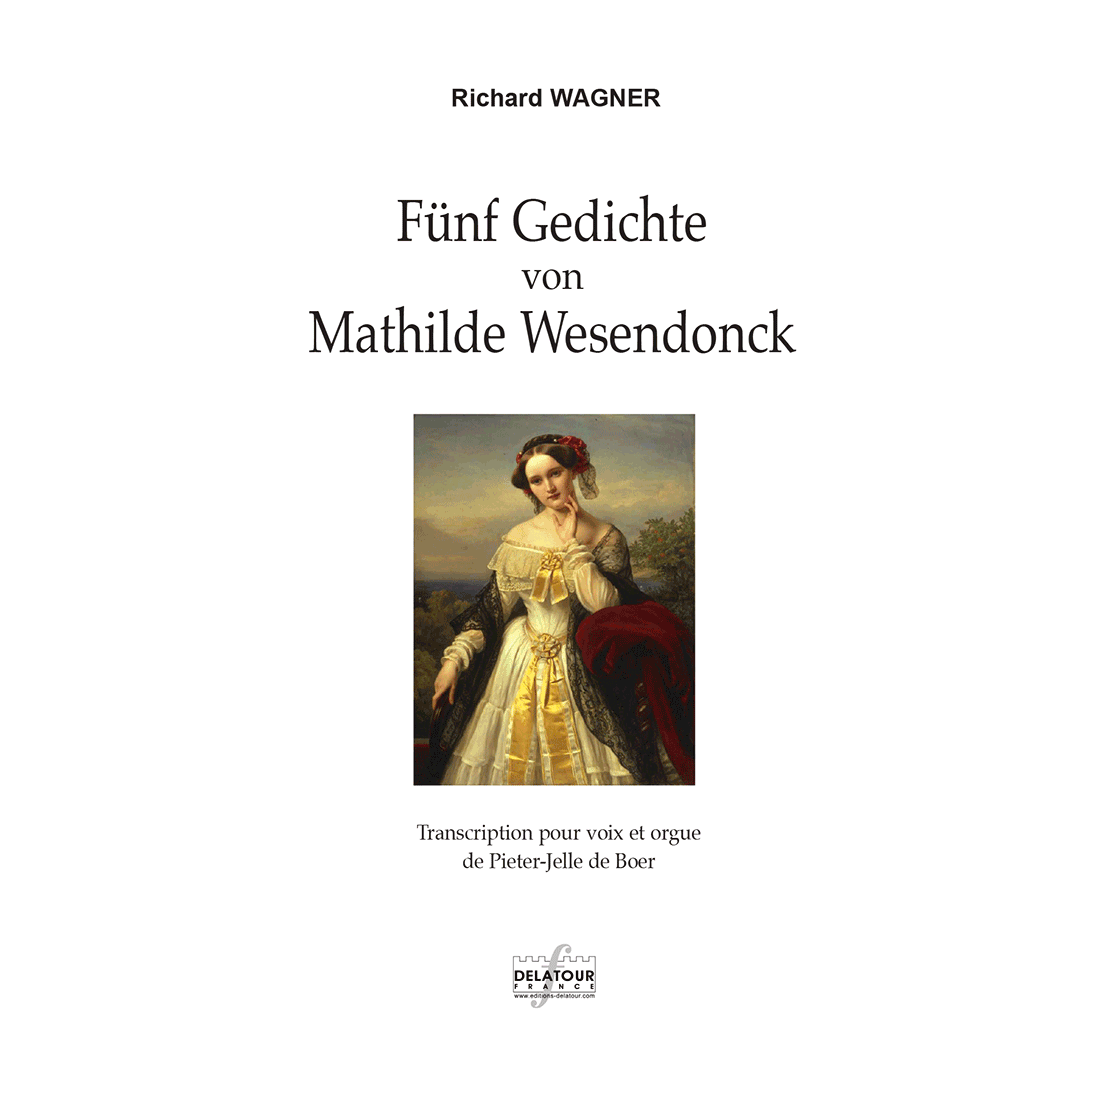 Fünf Gedichte von Mathilde Wesendonck für Frauenstimme und Orgel